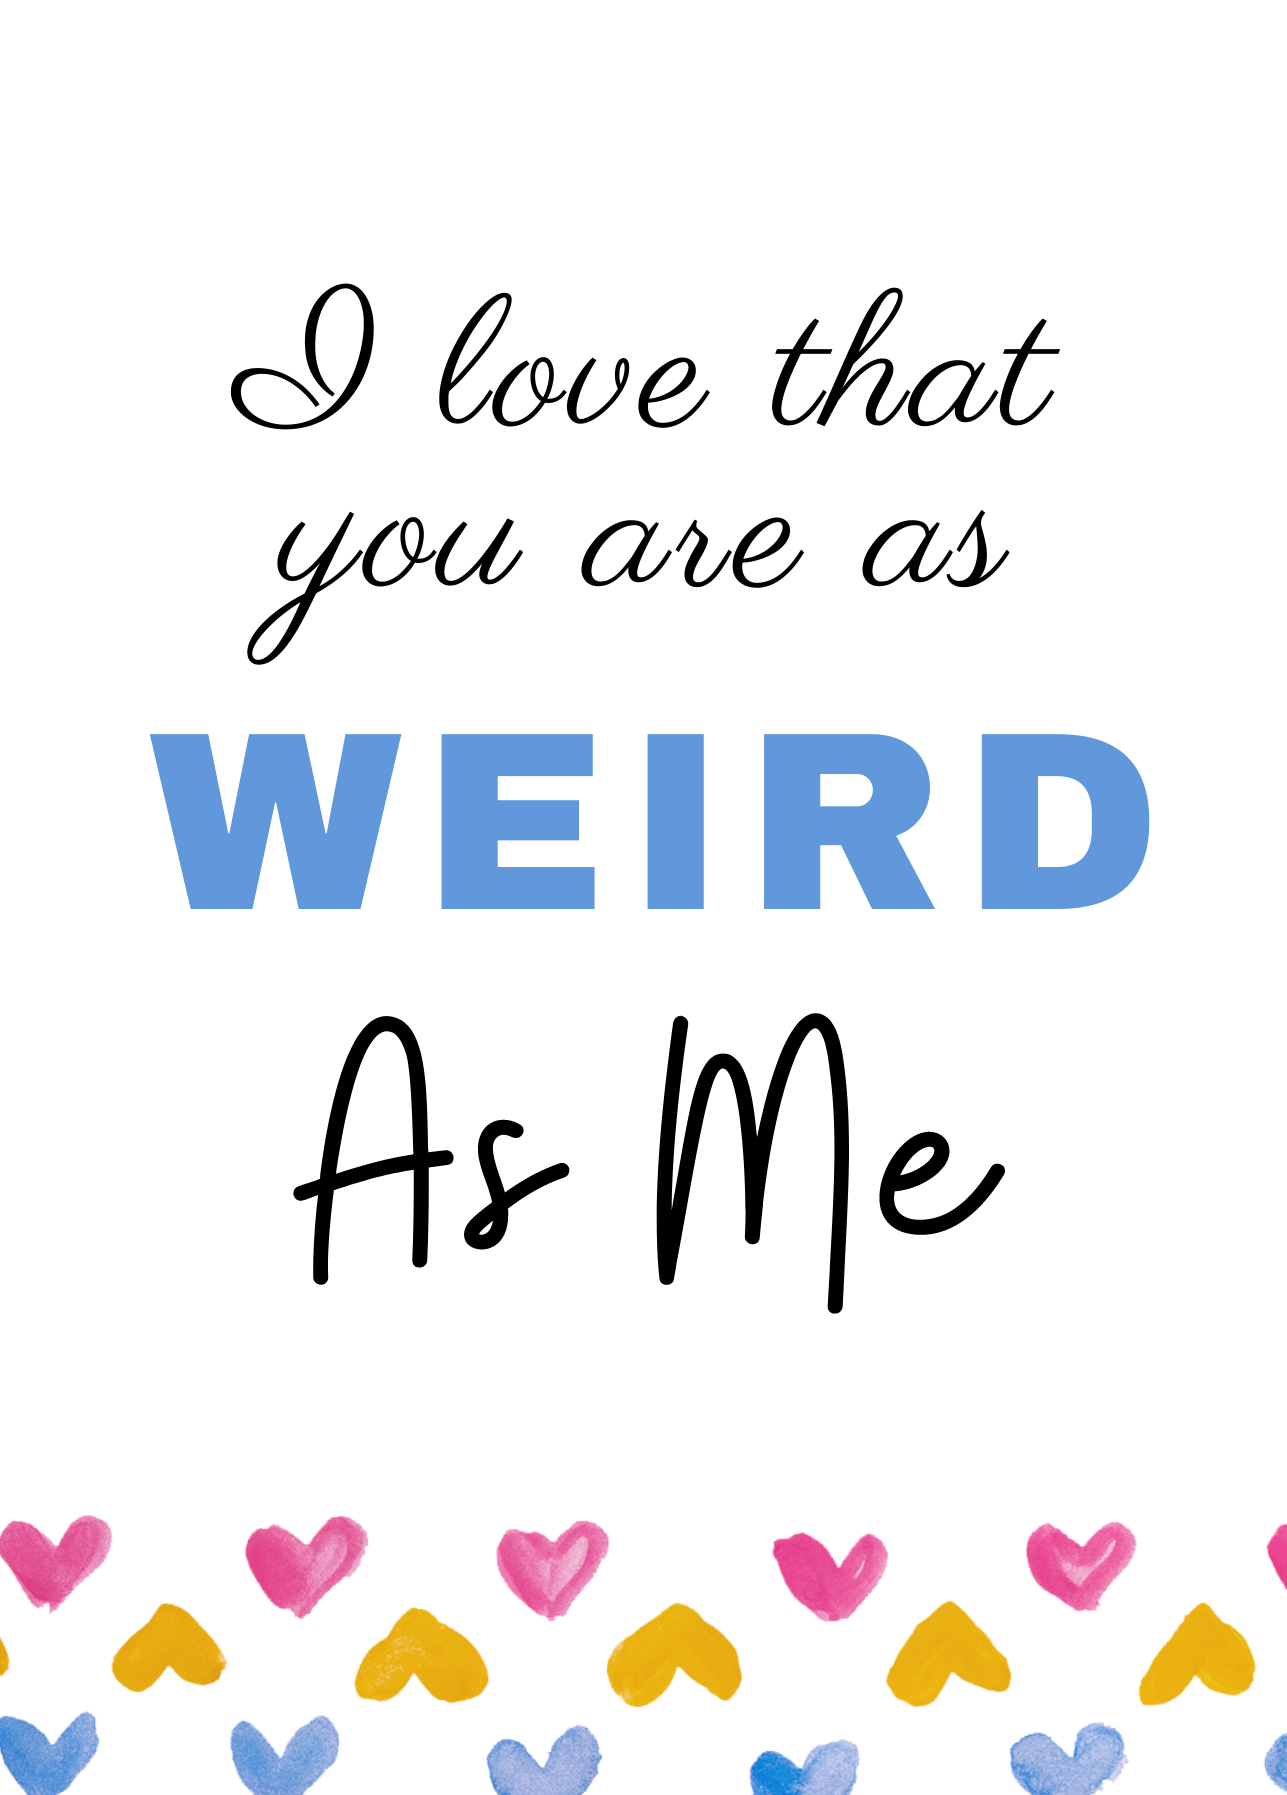 "As weird as me" card